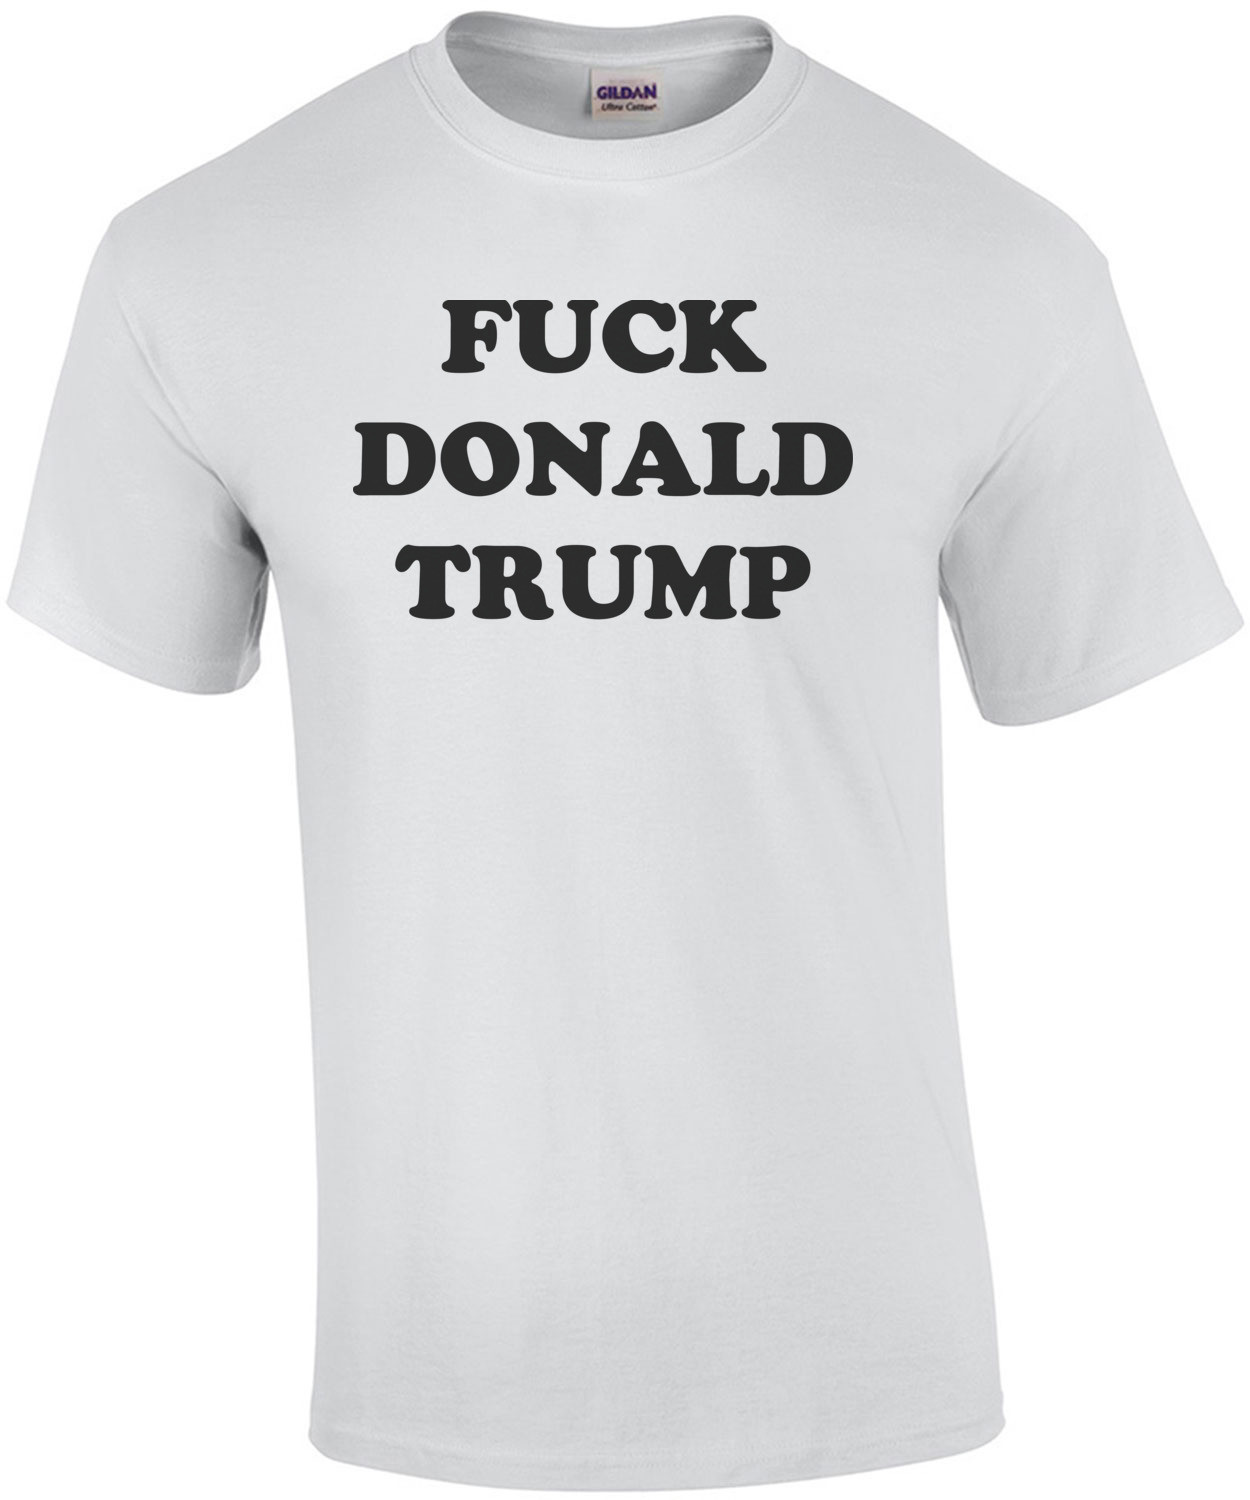 Fuck Donald Trump - Anti Trump T-Shirt